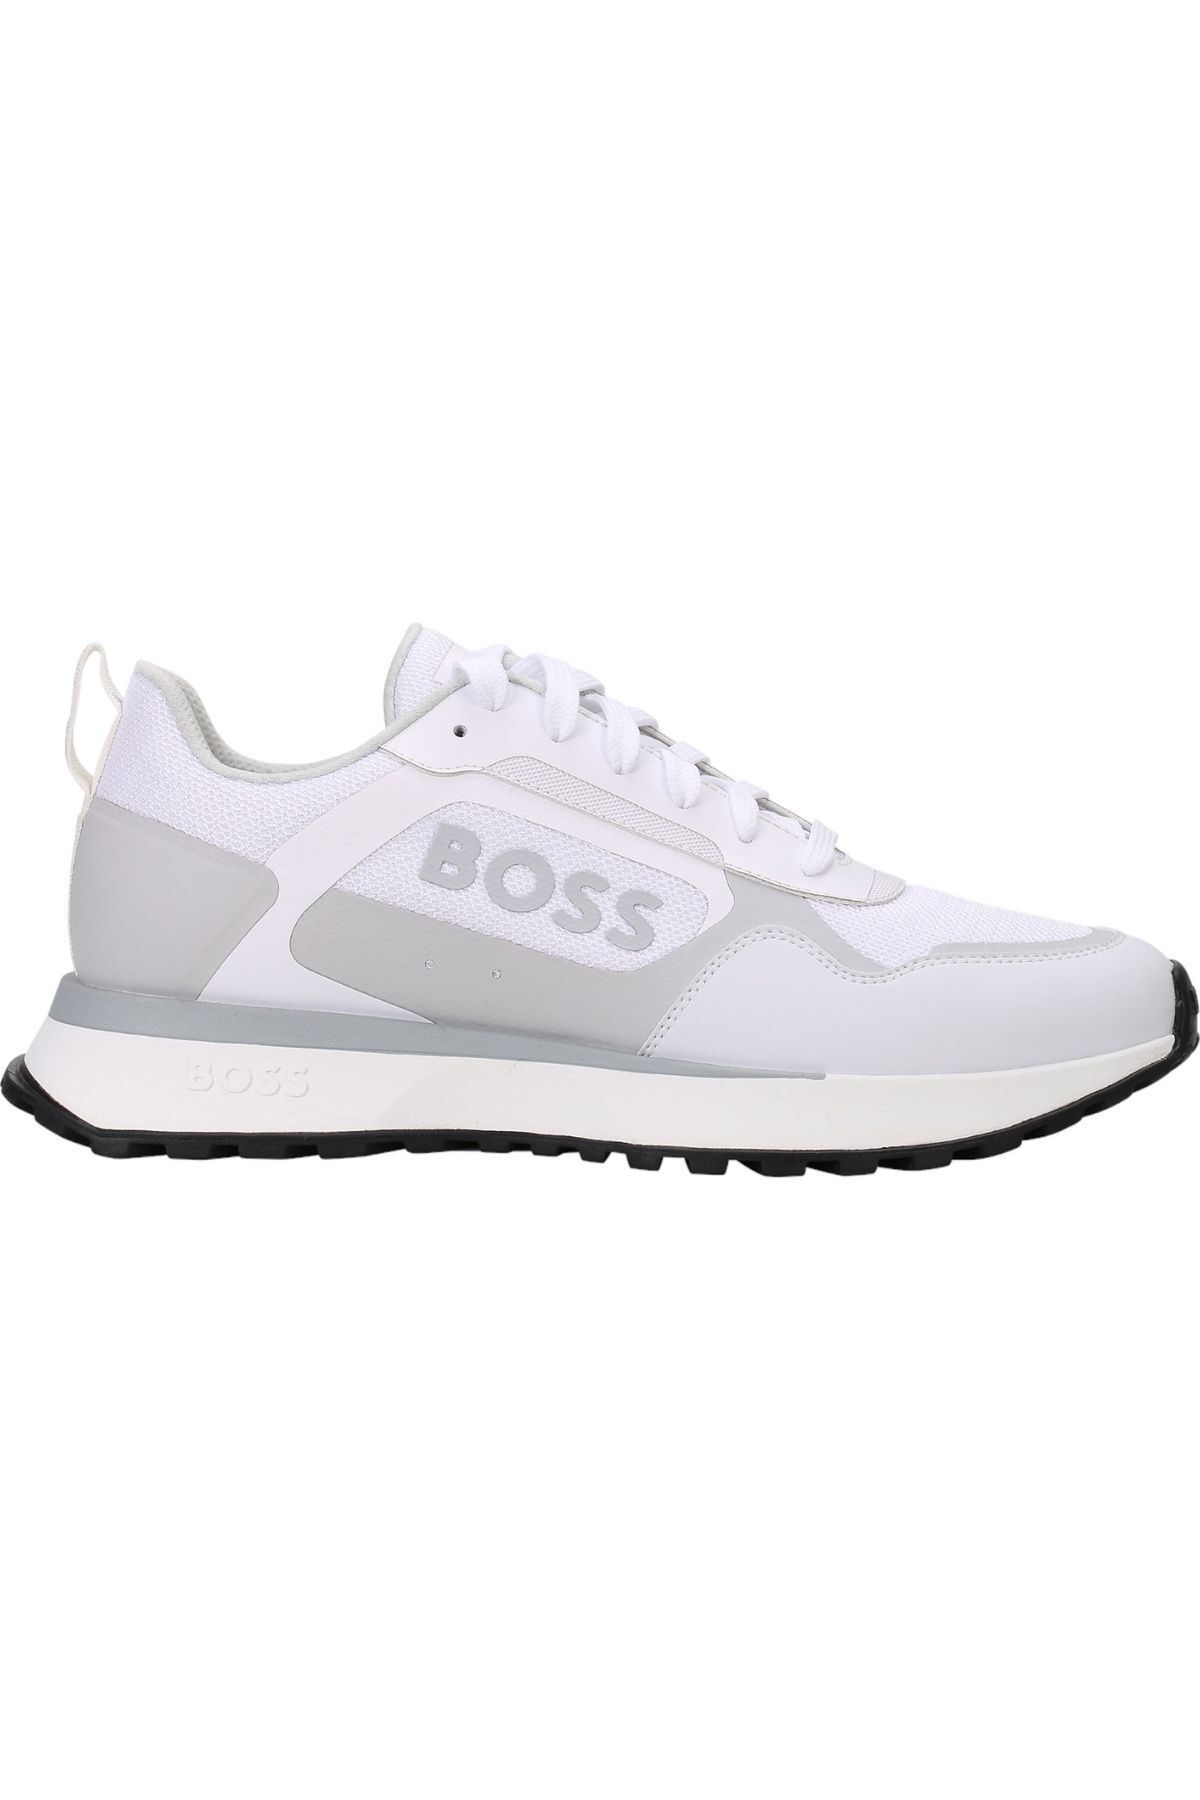 BOSS Erkek Marka Logolu Bağcıklı Kaydırmaz Tabanlı Günlük Beyaz Sneaker 50517300-100